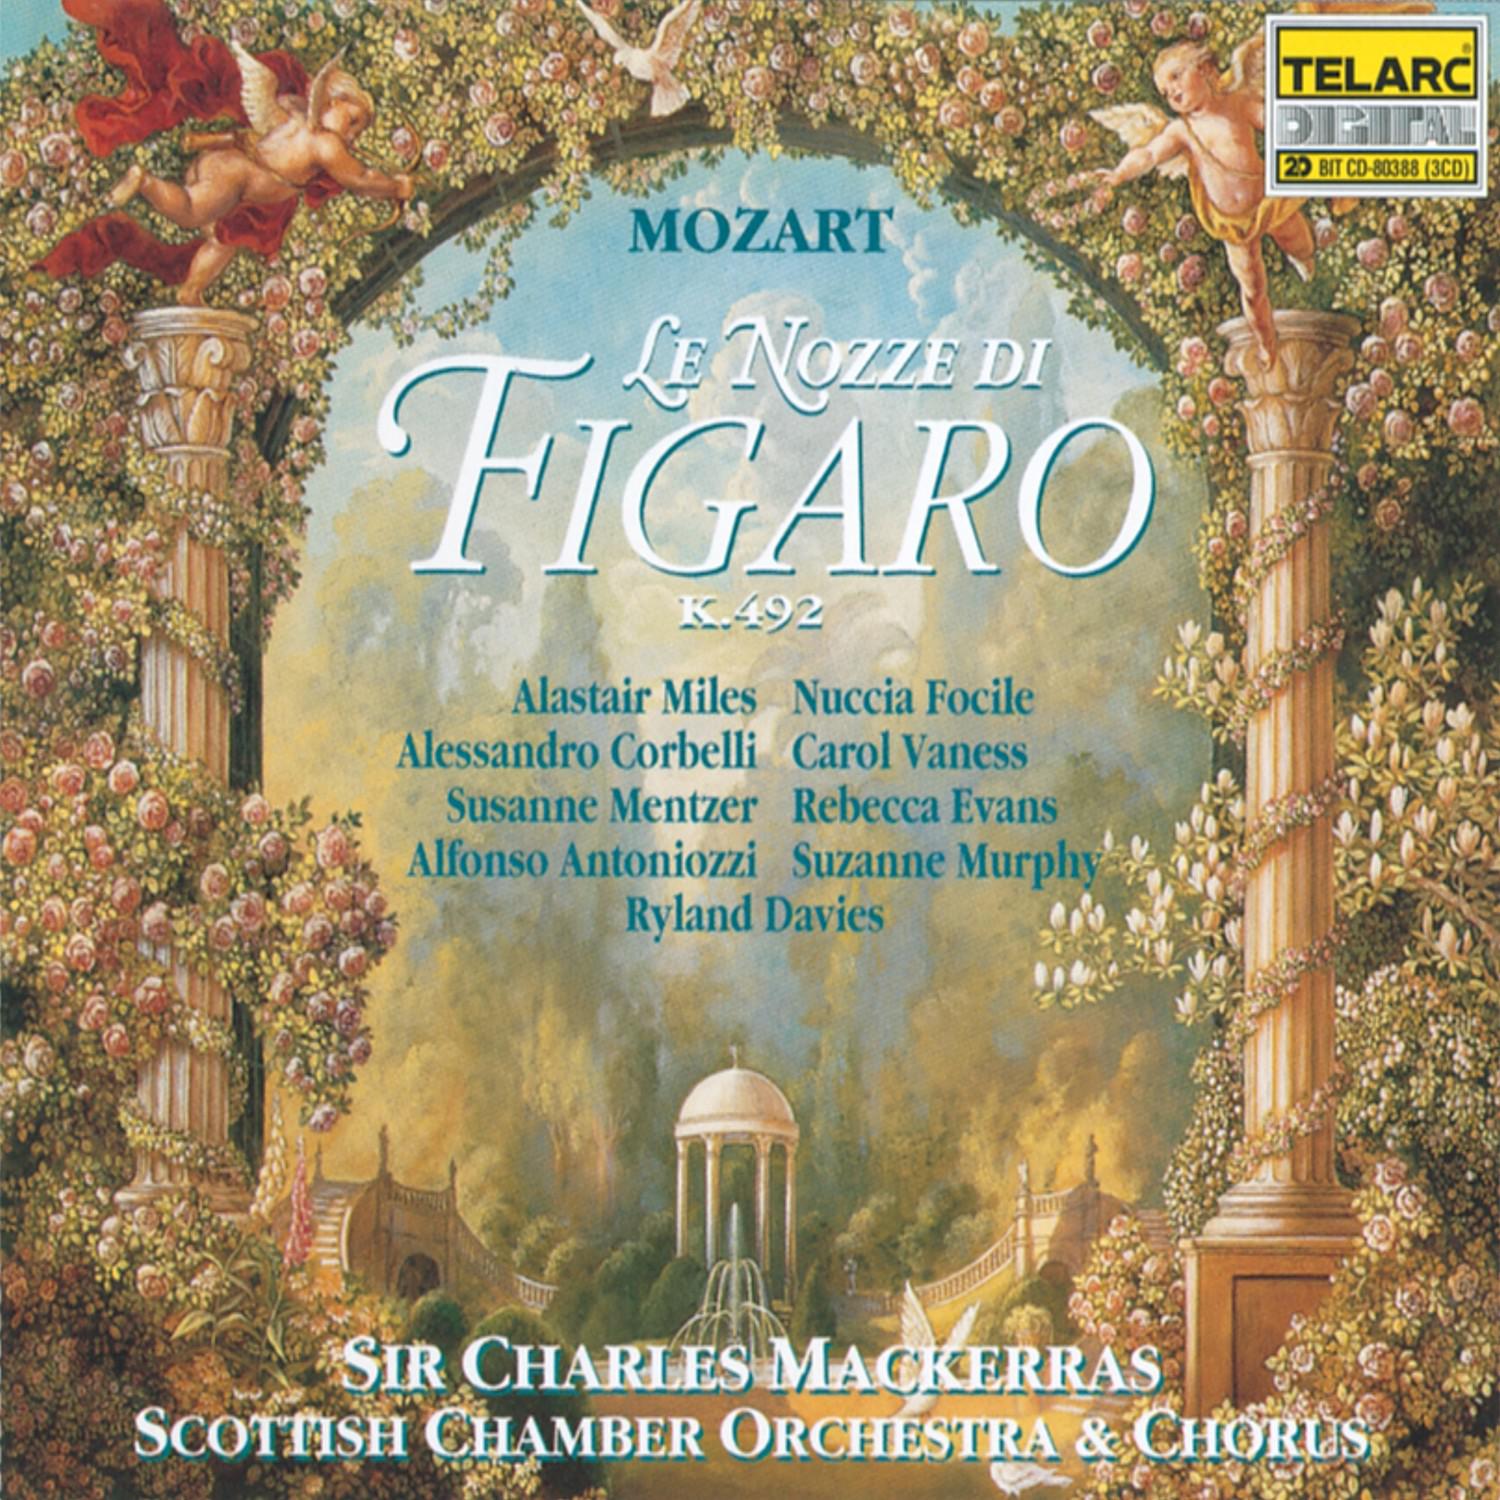 Marriage of Figaro: N. 29: Finale: "Pian pianin le andro piu presso"